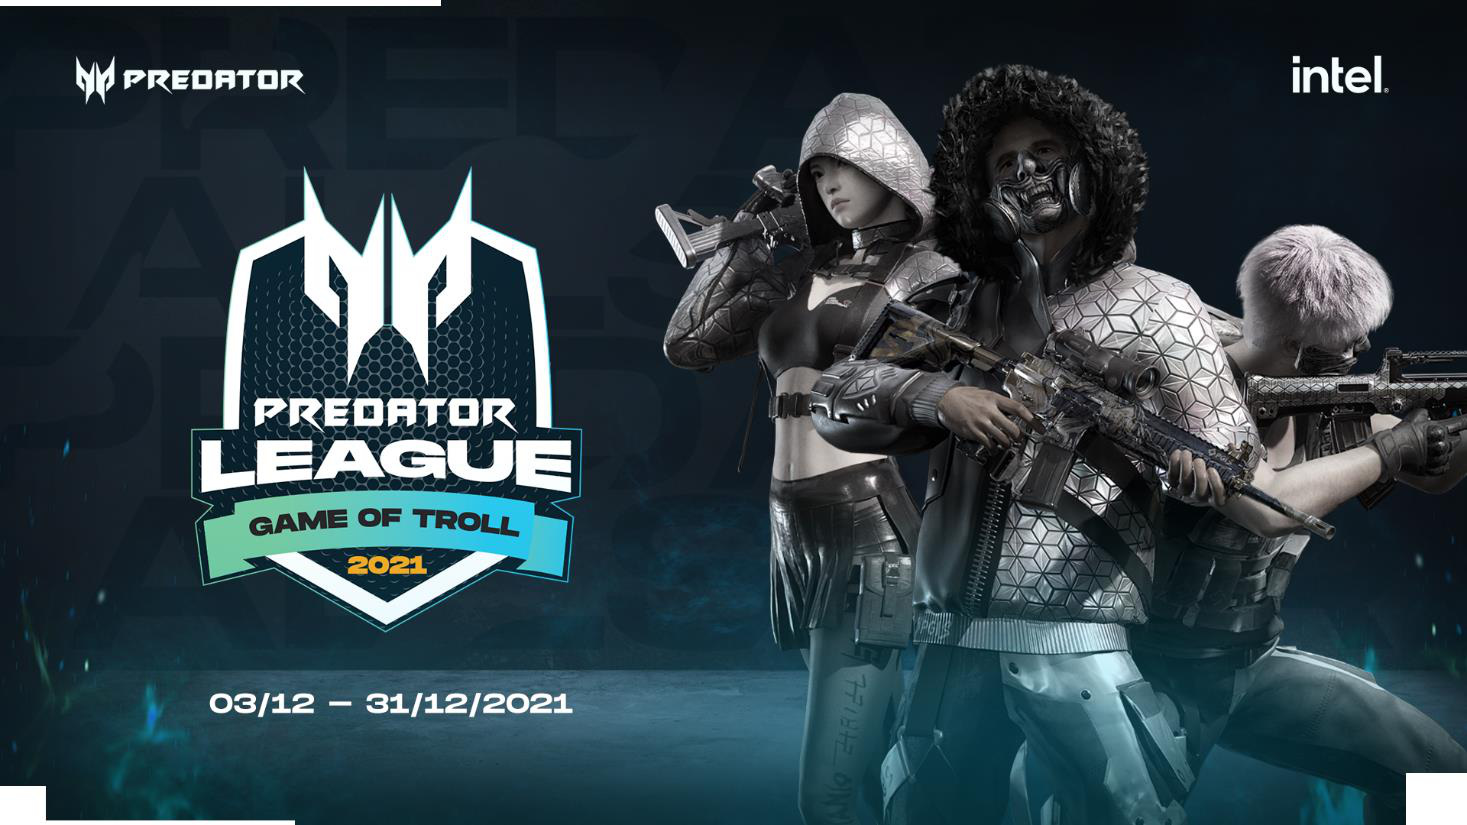 Giải đấu Predator League 2021 khởi tranh với chủ đề “Game of Troll” vào tháng 12! [HOT]